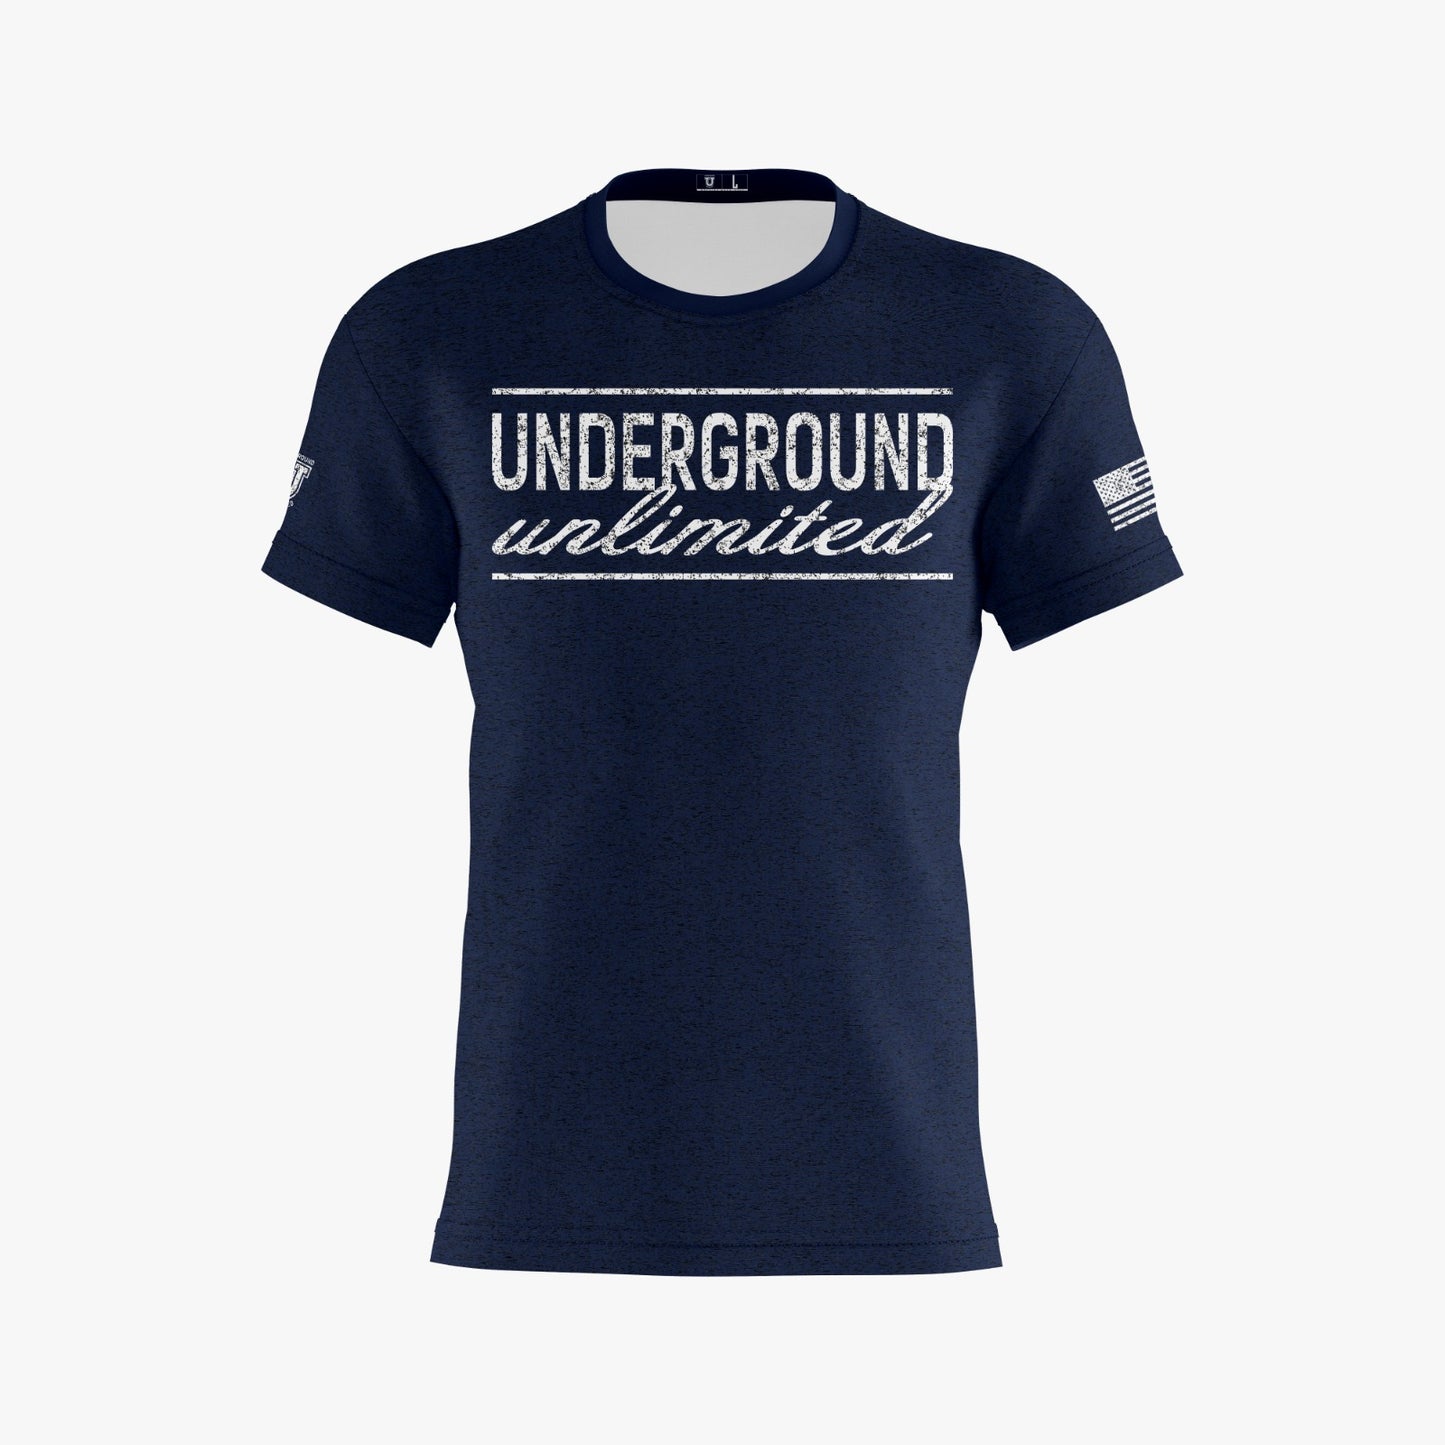 Underground Unlimited Performance Dri Tech Design ~ Navy